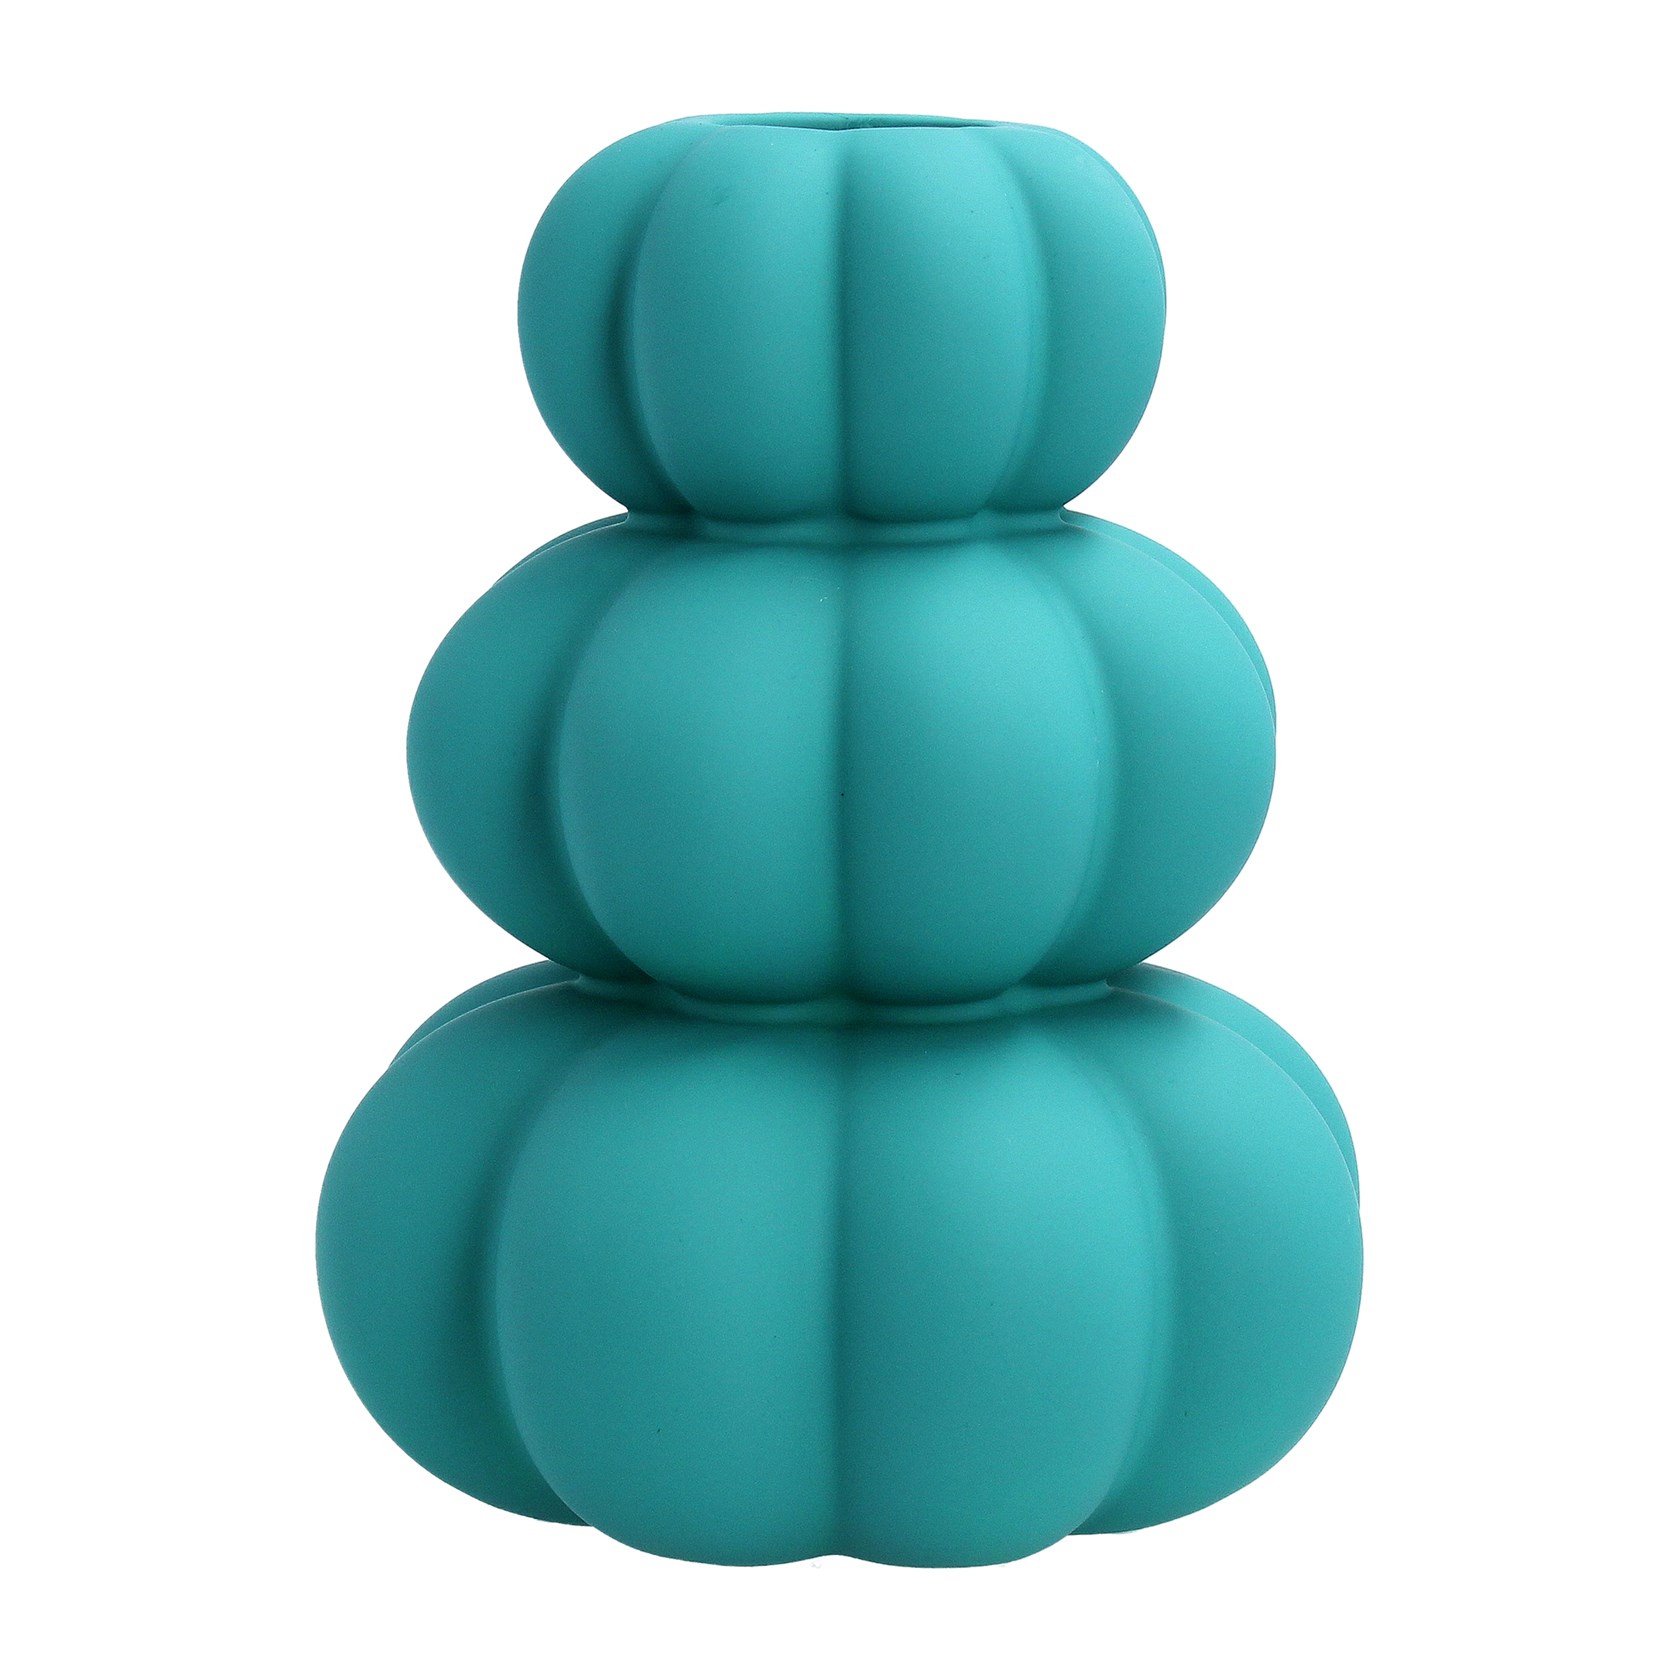 Turquoise Stacked Ceramic vase by Gisela Graham